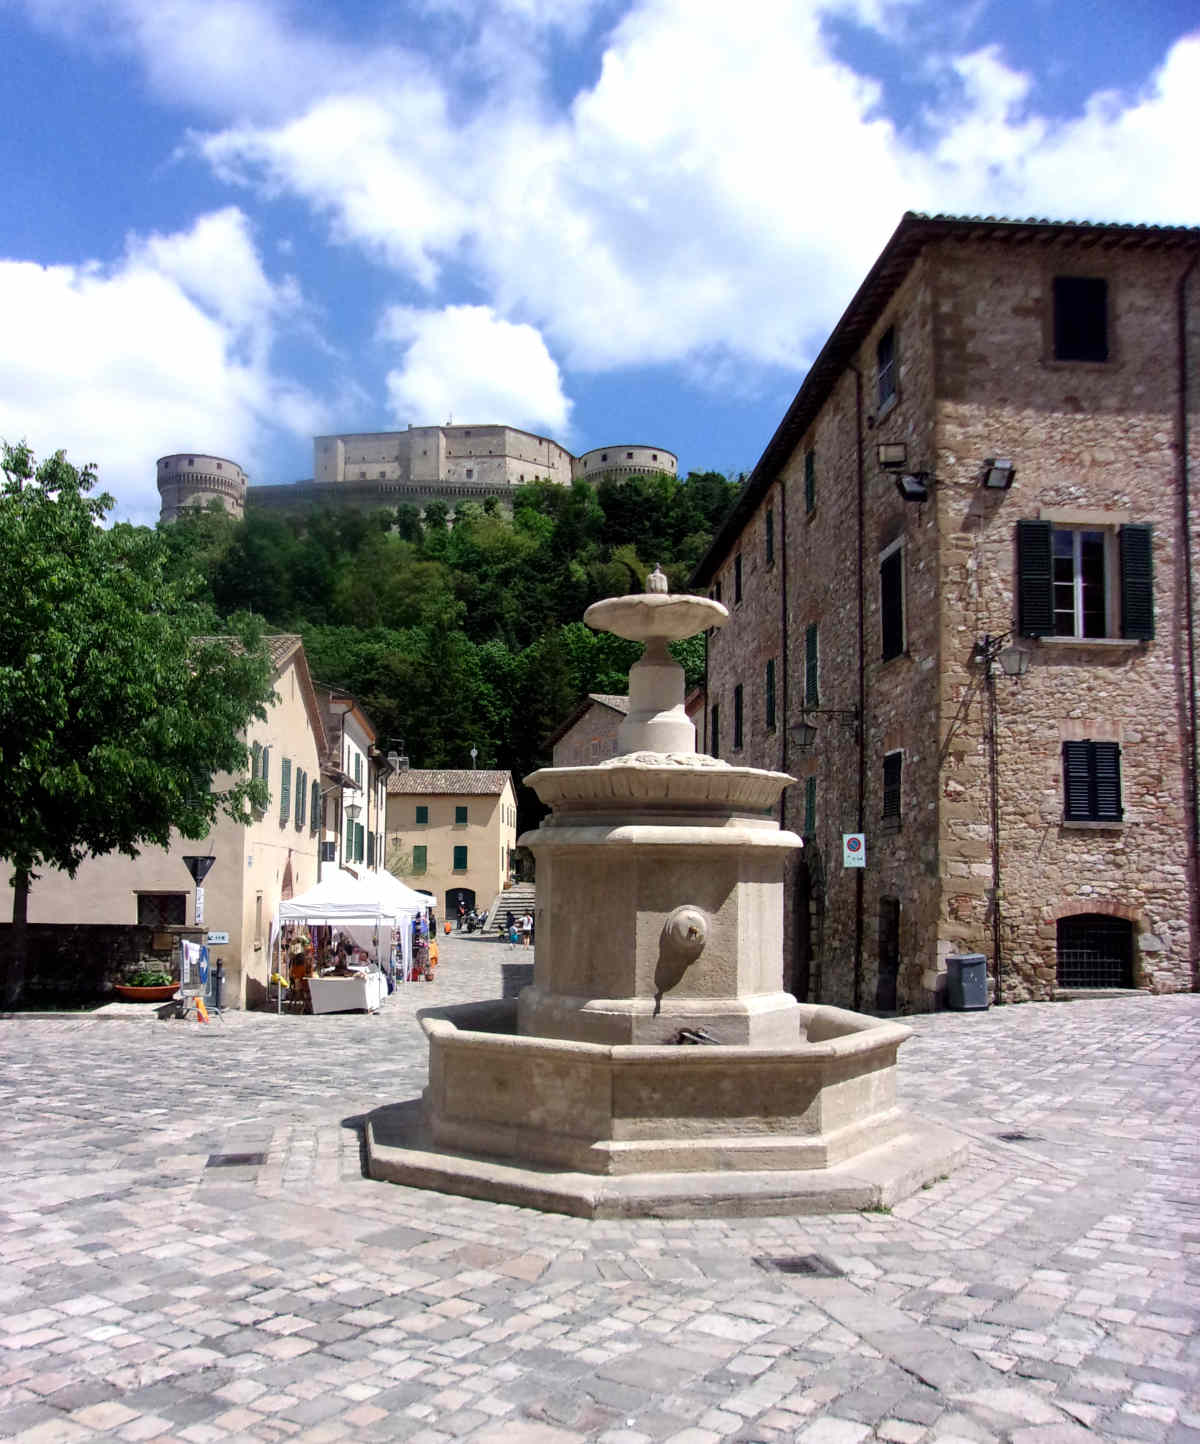 Borghi da visitare in Valmarecchia; Piazza Dante e la fortezza a San Leo